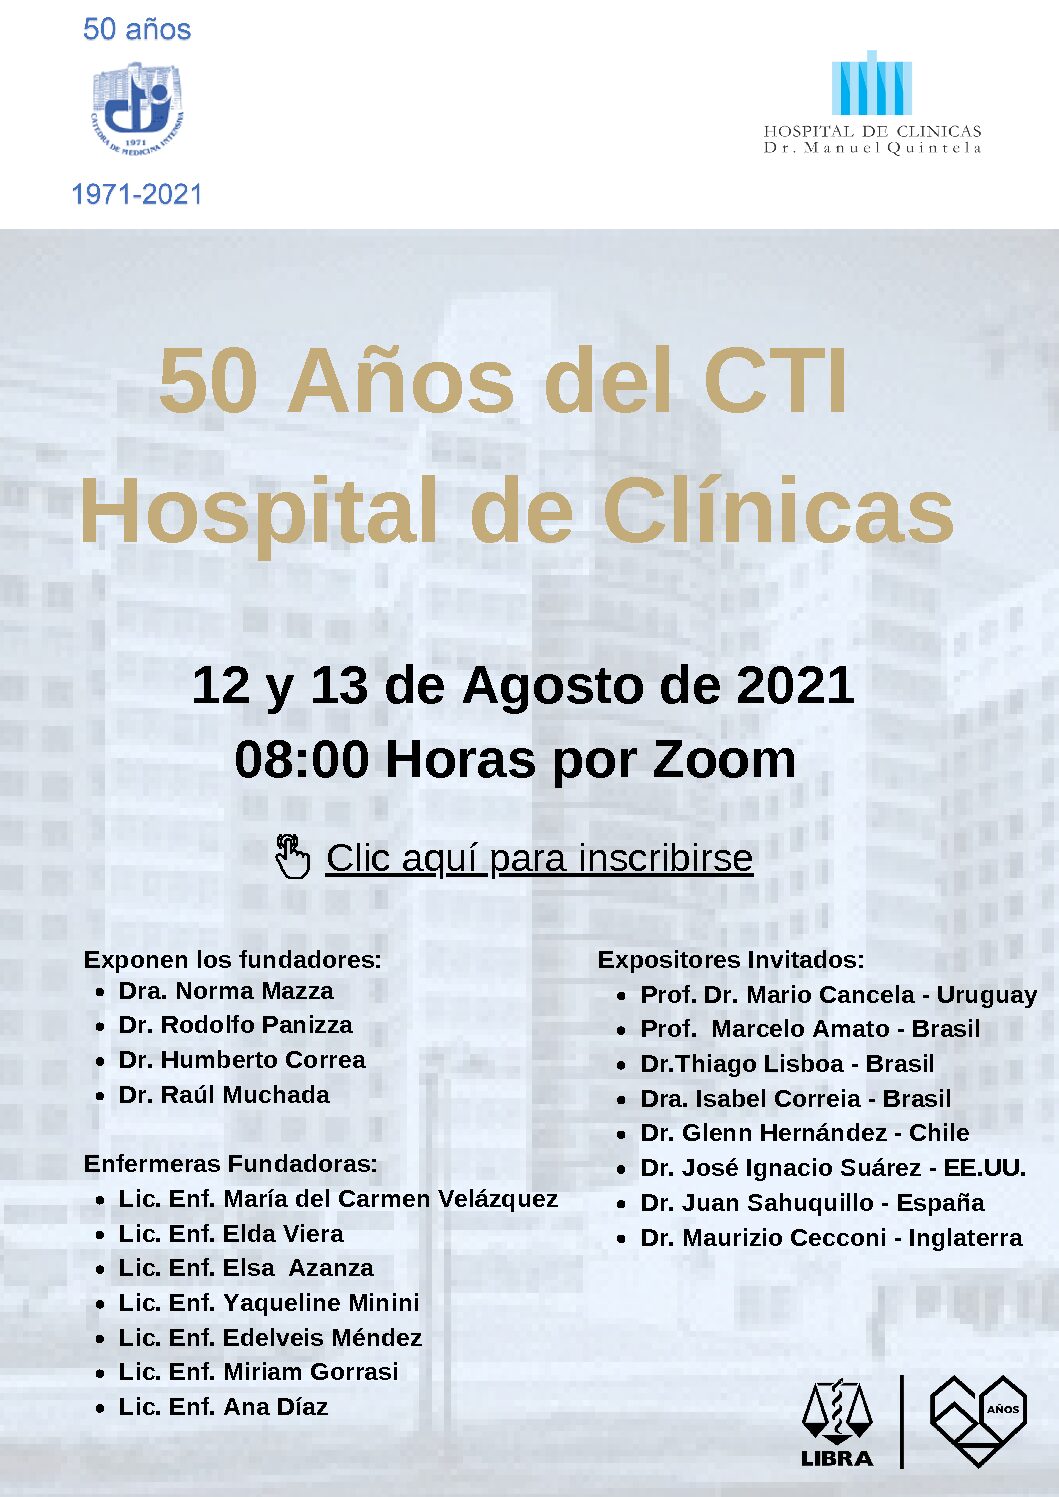 50 Años del CTI Hospital de Clínicas (2)